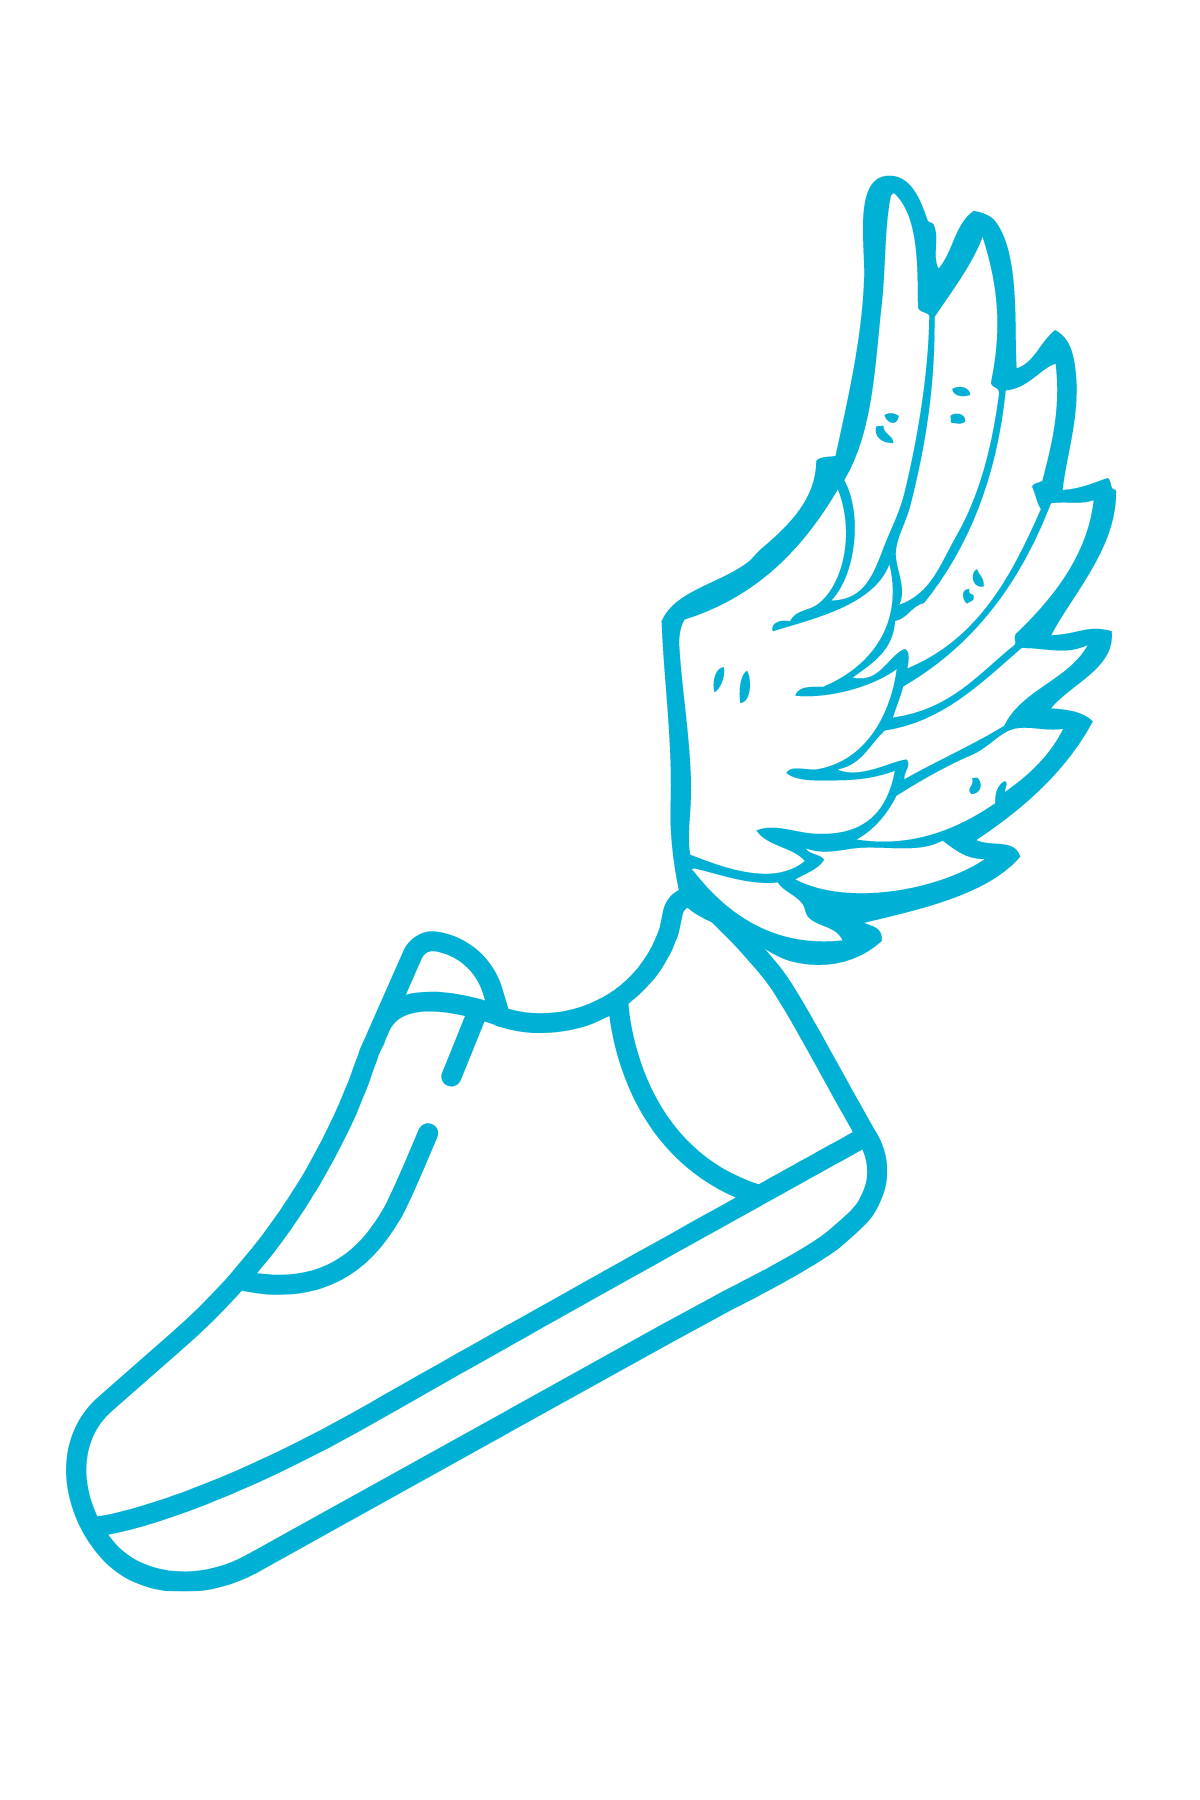 winged shoe icon